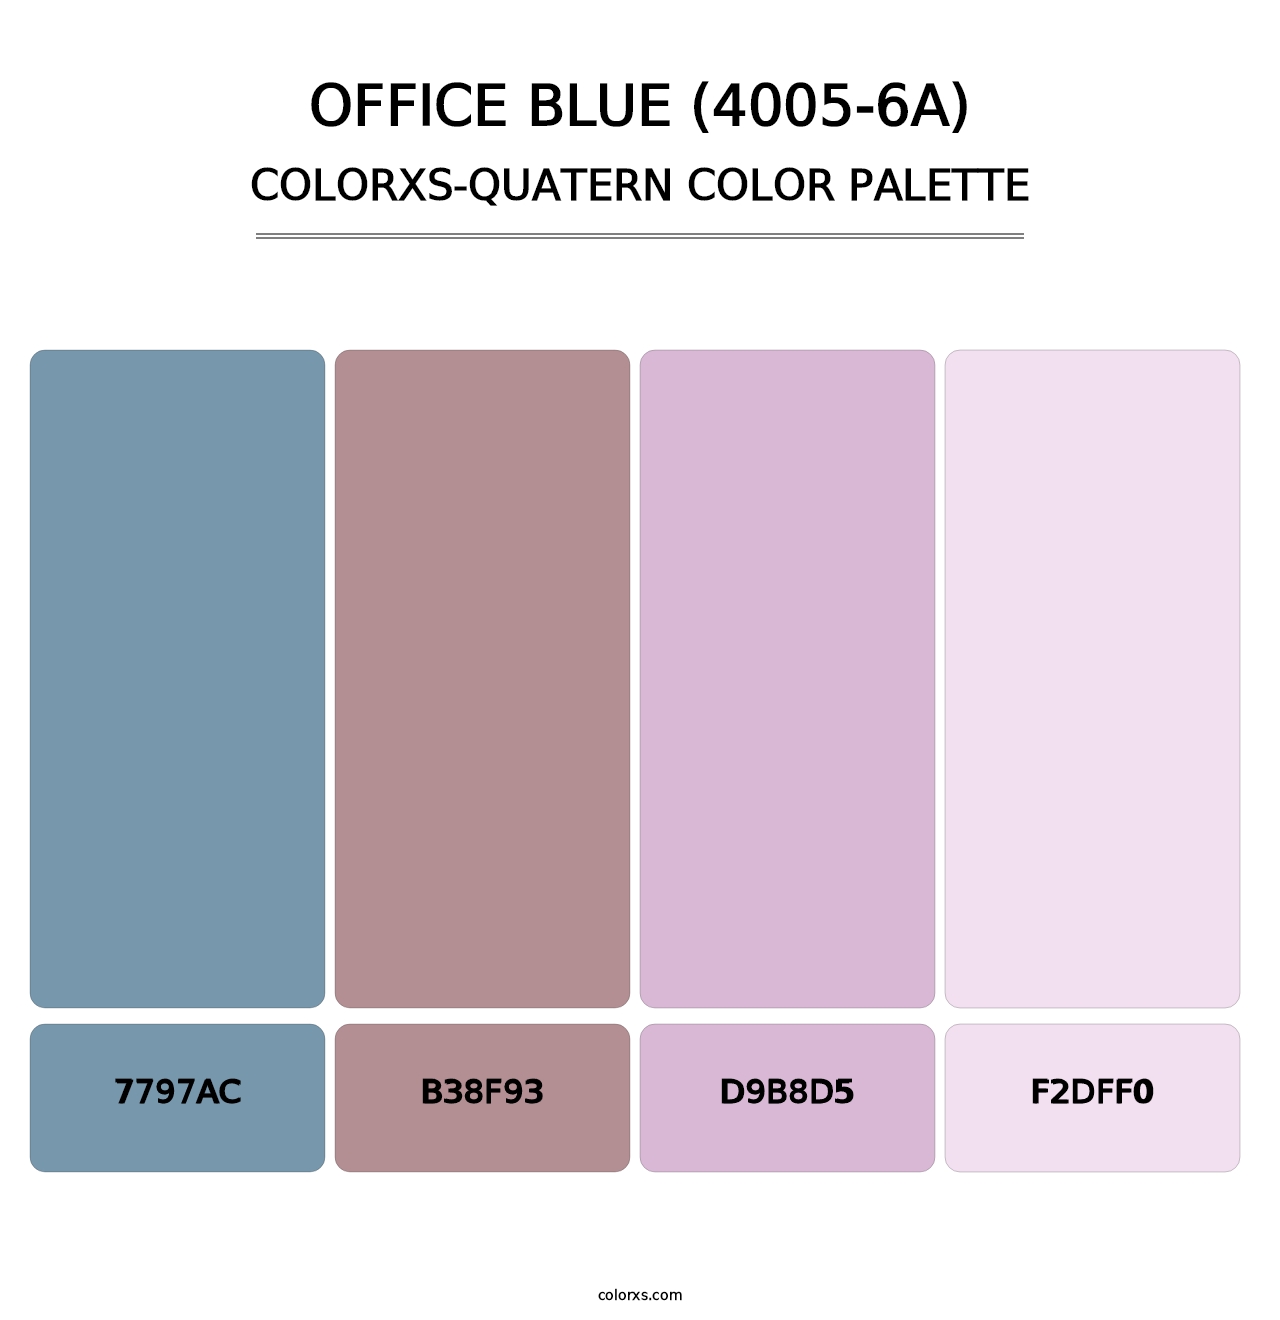 Office Blue (4005-6A) - Colorxs Quatern Palette